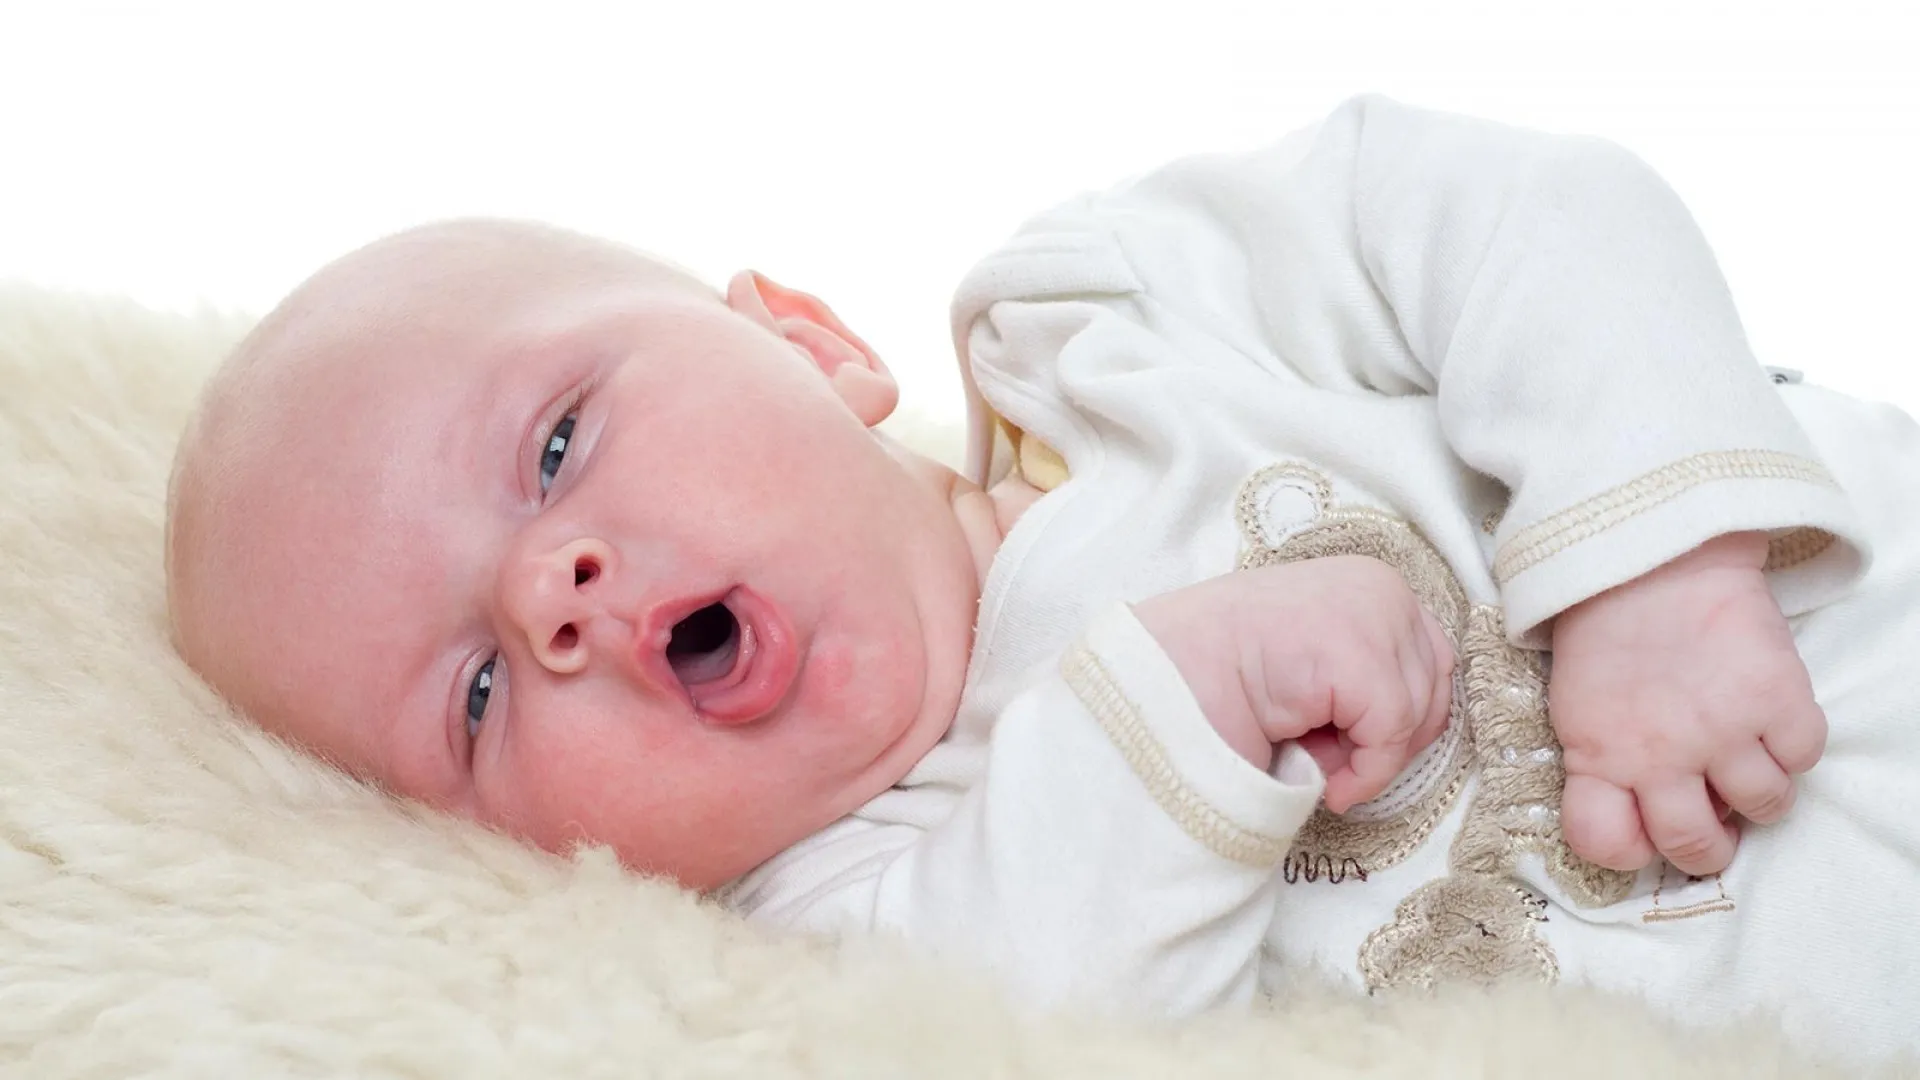 Γιατί βήχει το μωρό; Ο παιδίατρος εξηγεί πώς να «μεταφράζουμε» σωστά τον κάθε βήχα και συμβουλεύει